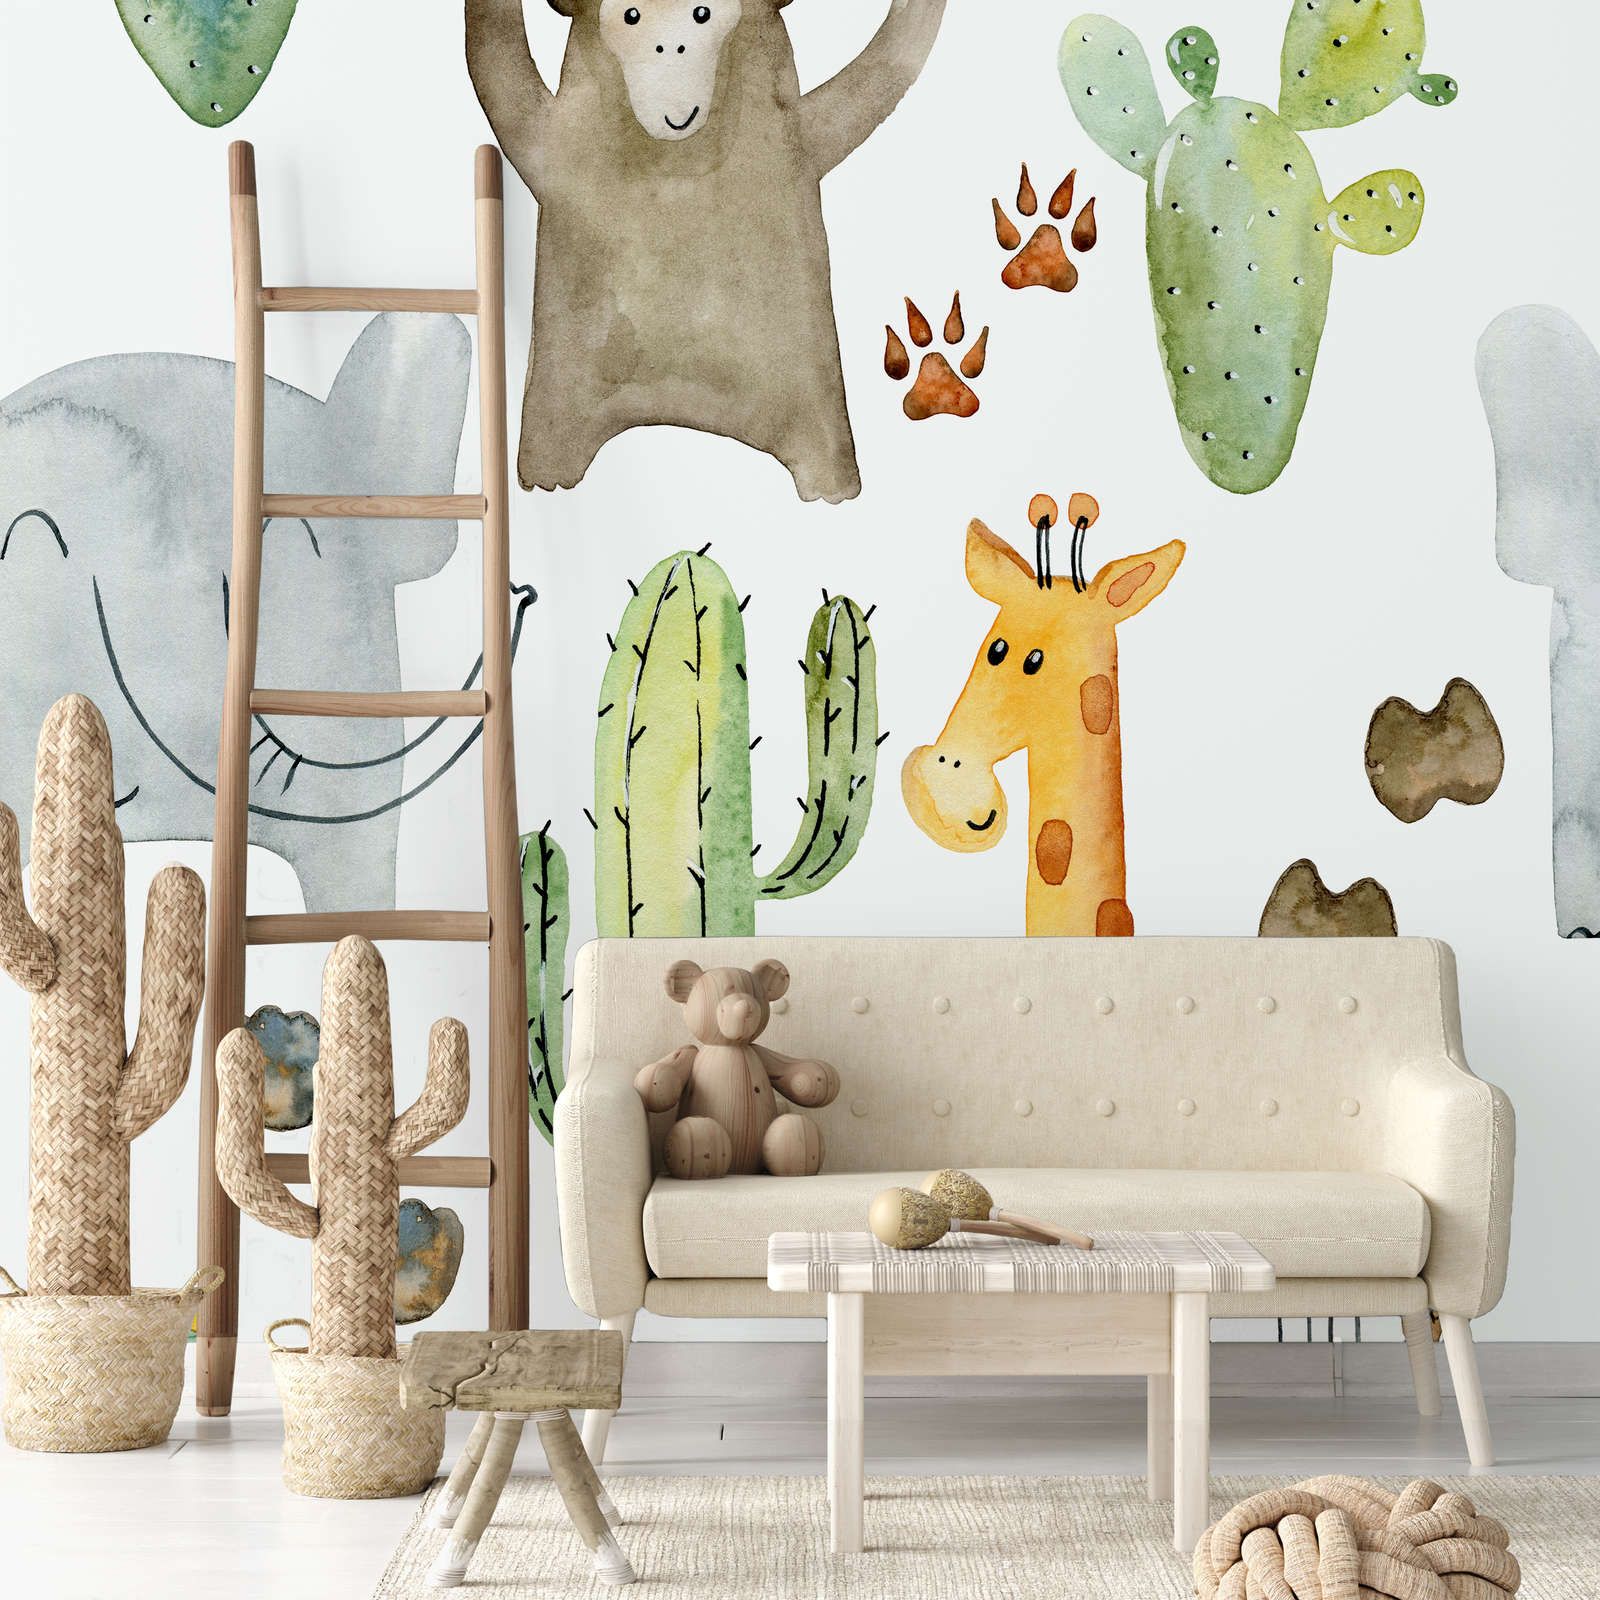             Papel pintado Animales y cactus - Material sin tejer liso y mate
        